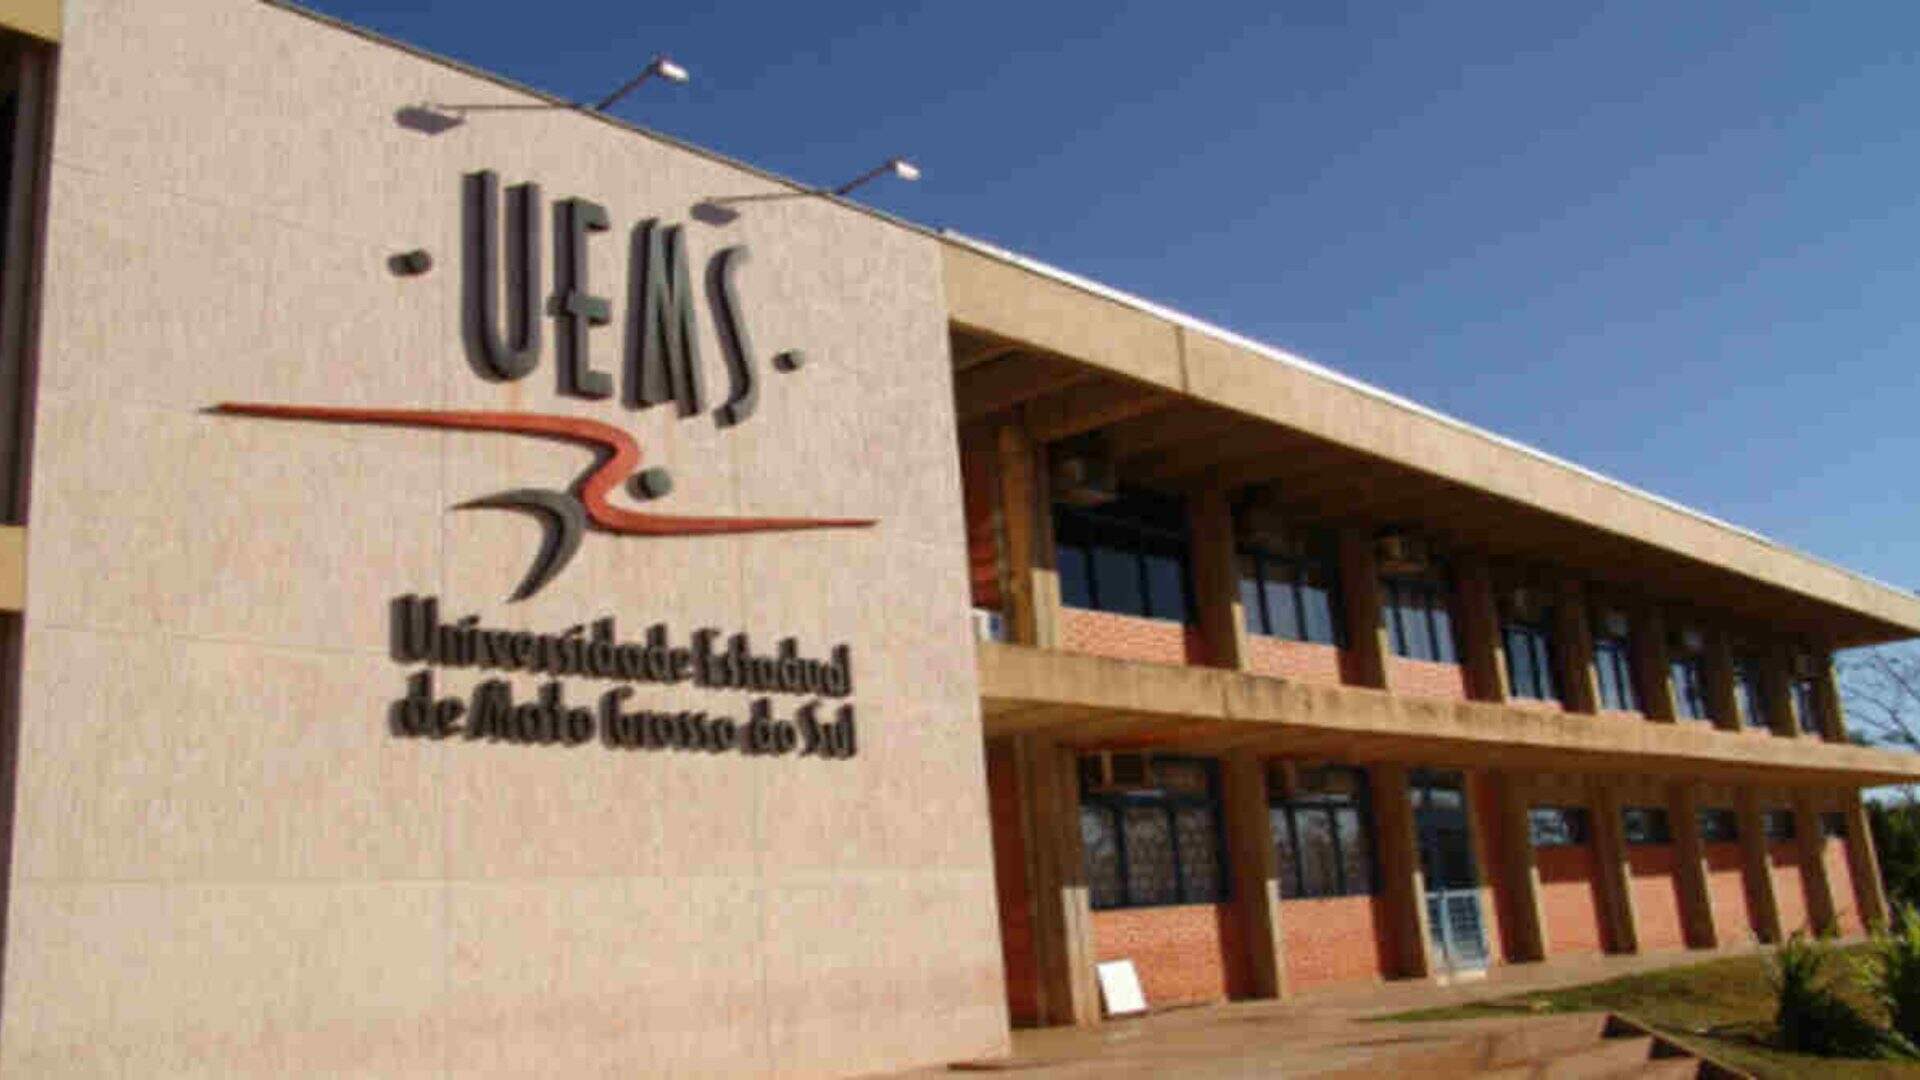 UEMS divulga resultado final de concurso para contratação de professores em 14 cidades